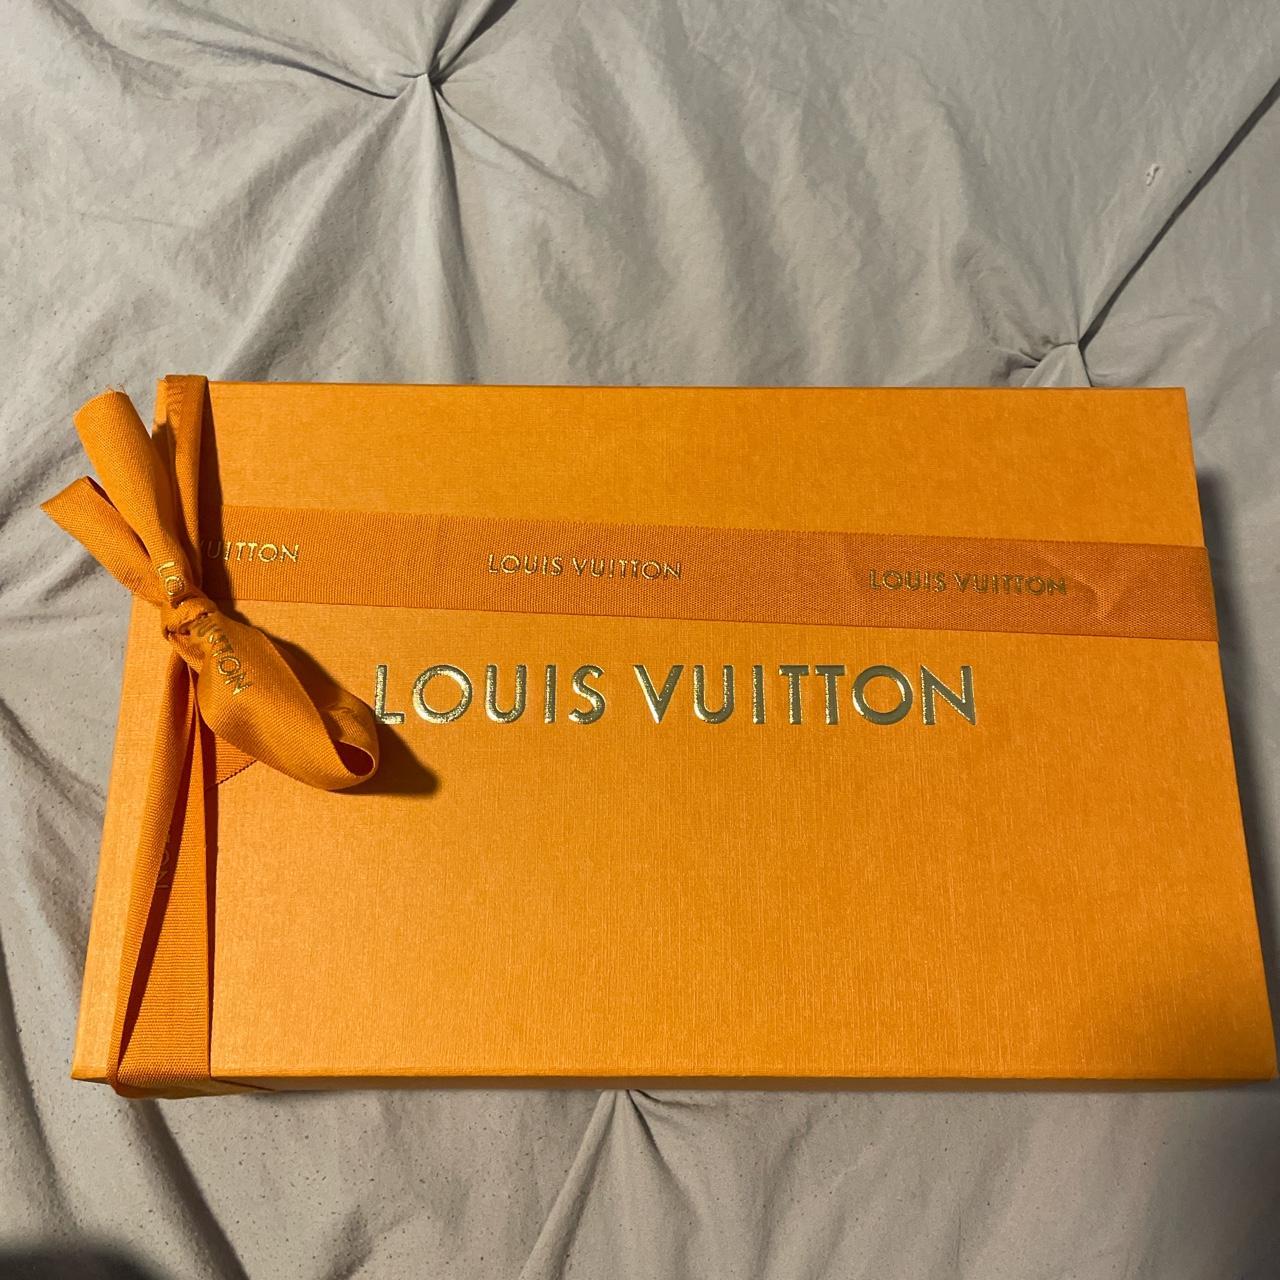 Louis Vuitton, Other, Authentic Louis Vuitton Box